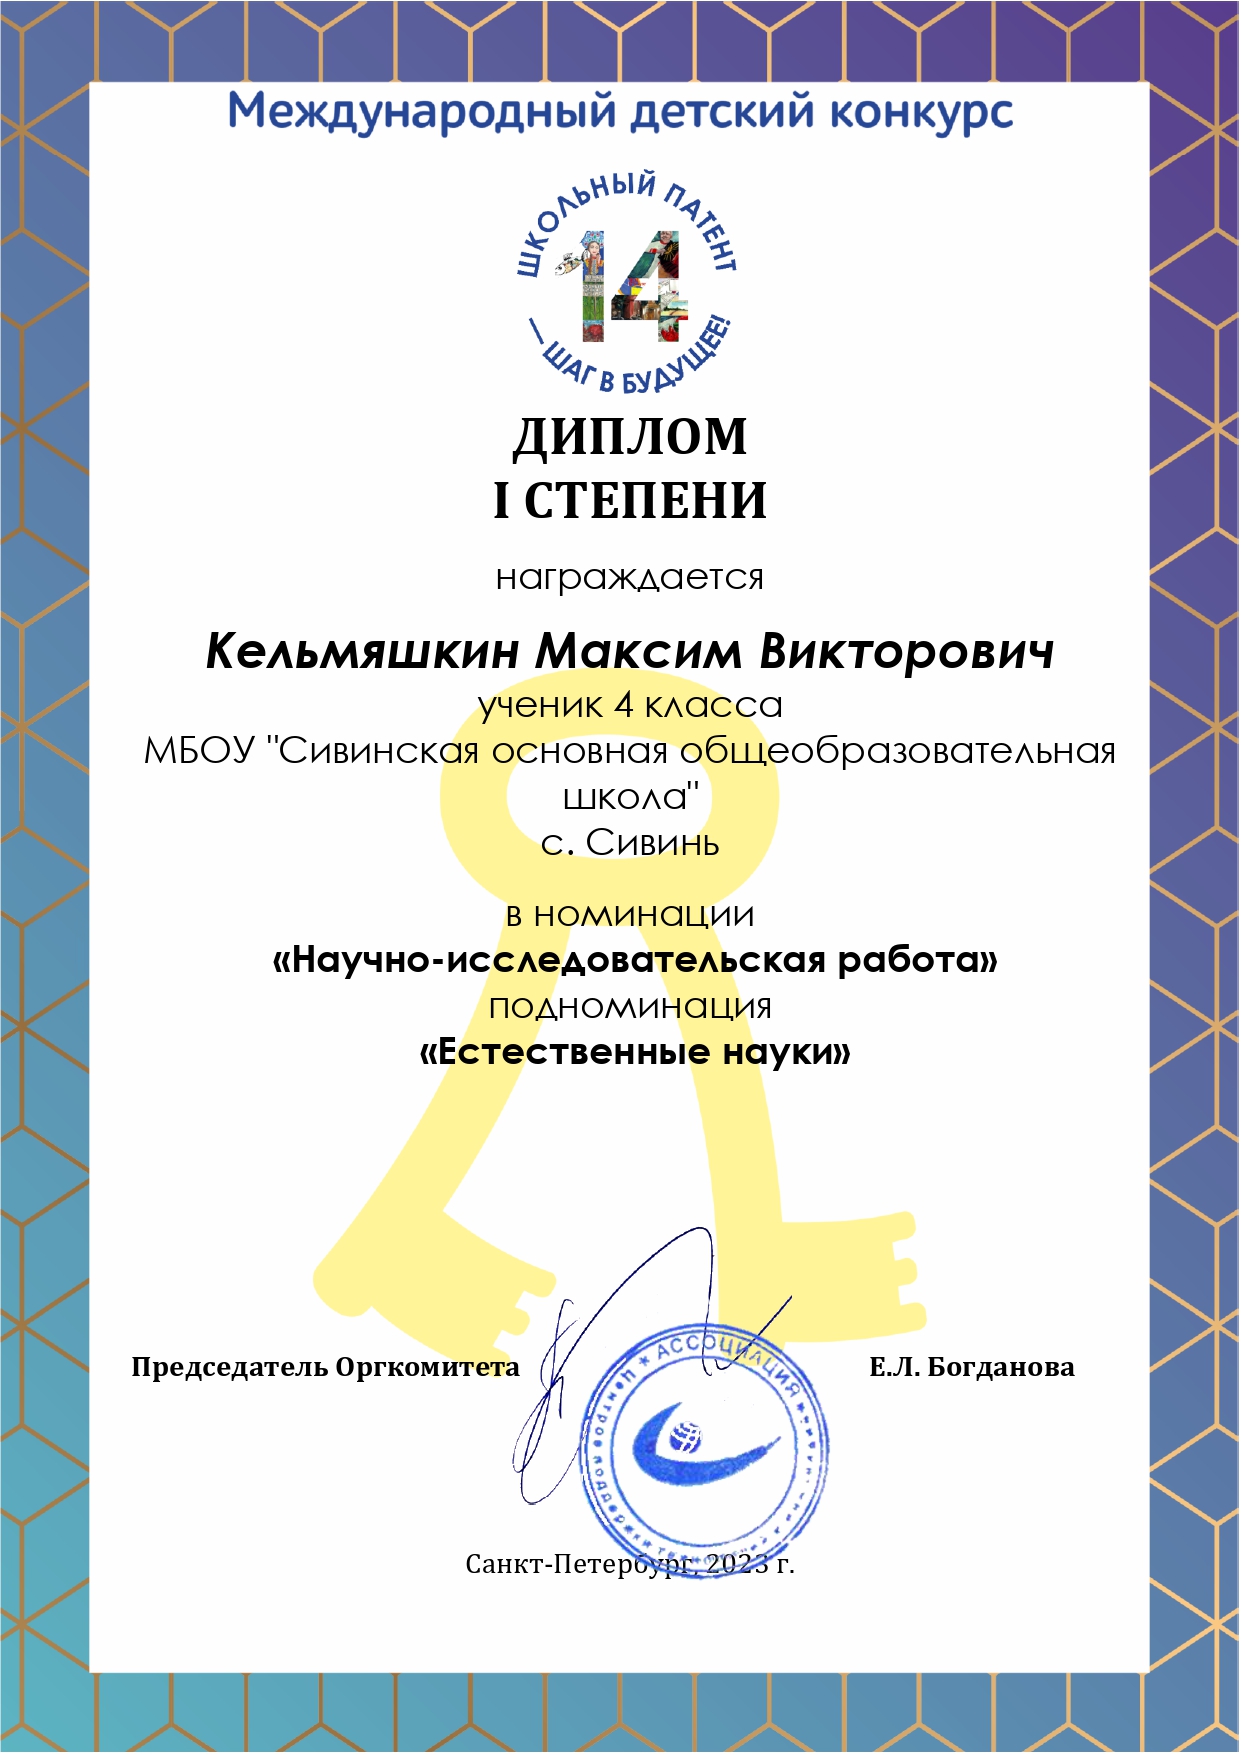 Кельмяшкин Максим победитель Международного детского конкурса Школьный патент - шаг в будущее